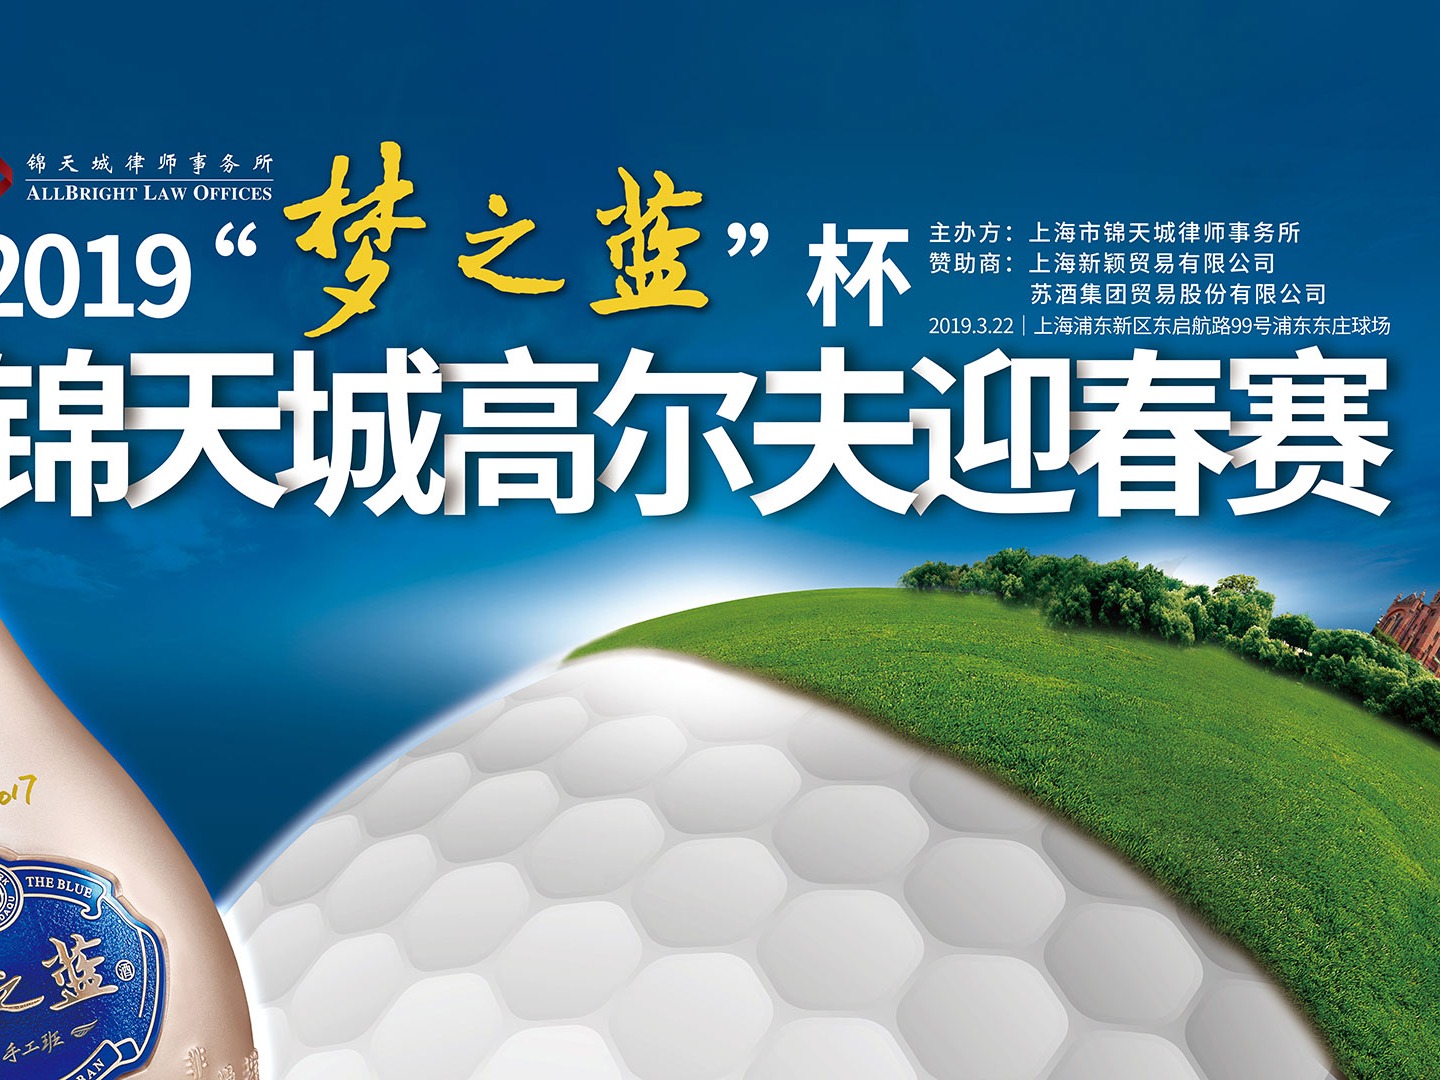 高尔夫运动-蓝牛仔影像-中国原创广告影像素材